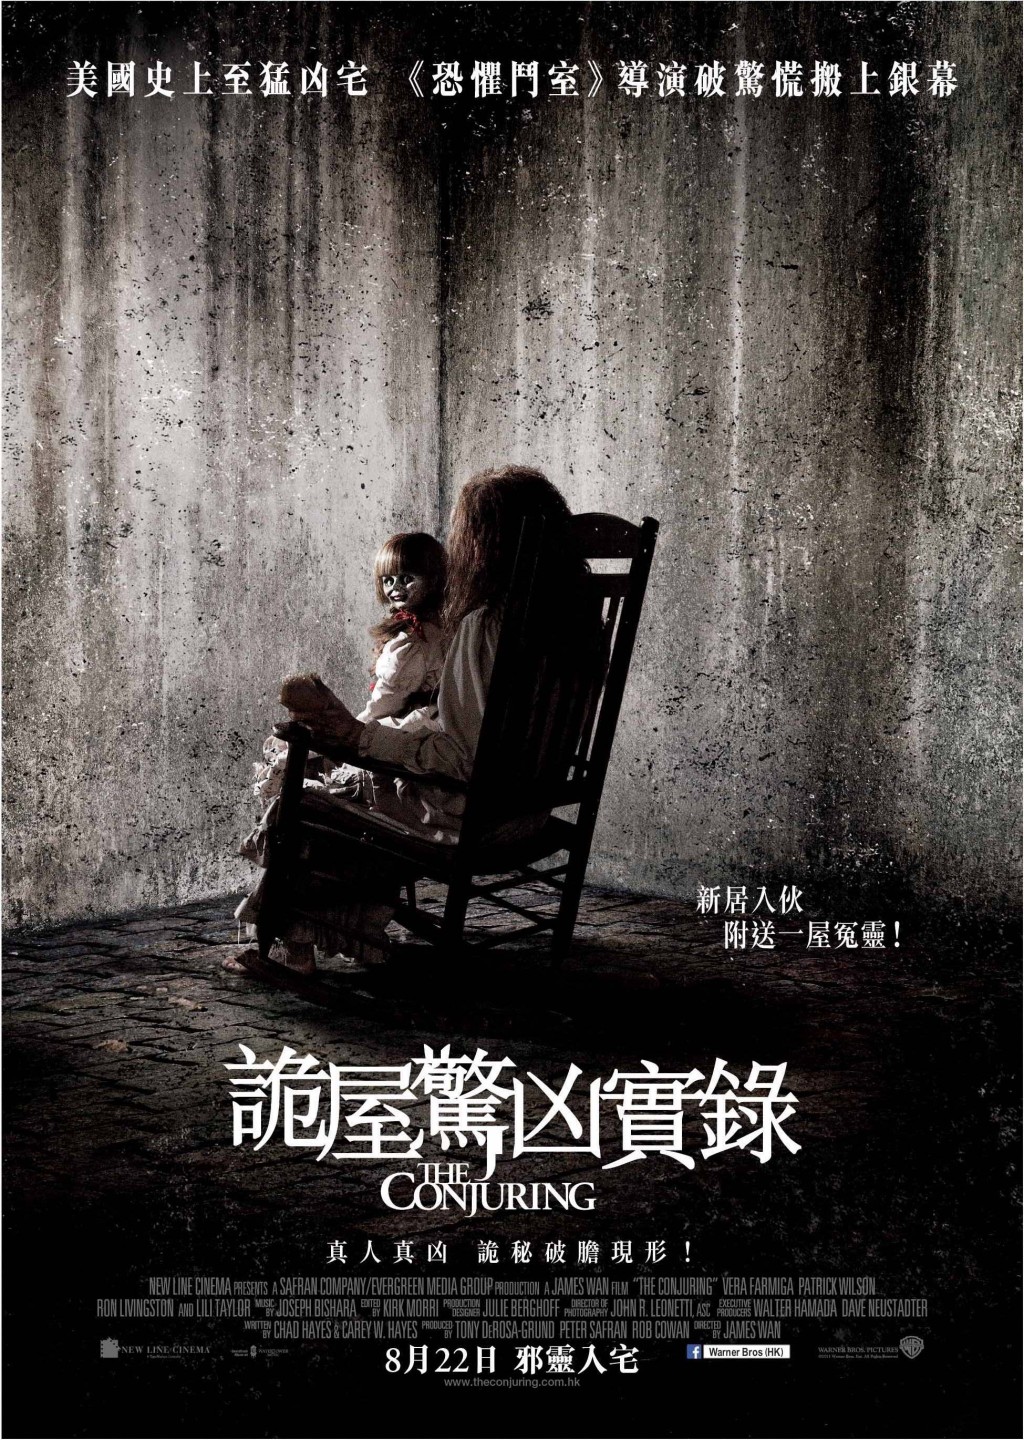 名导温子仁曾执导电影《诡屋惊凶实录》系列。